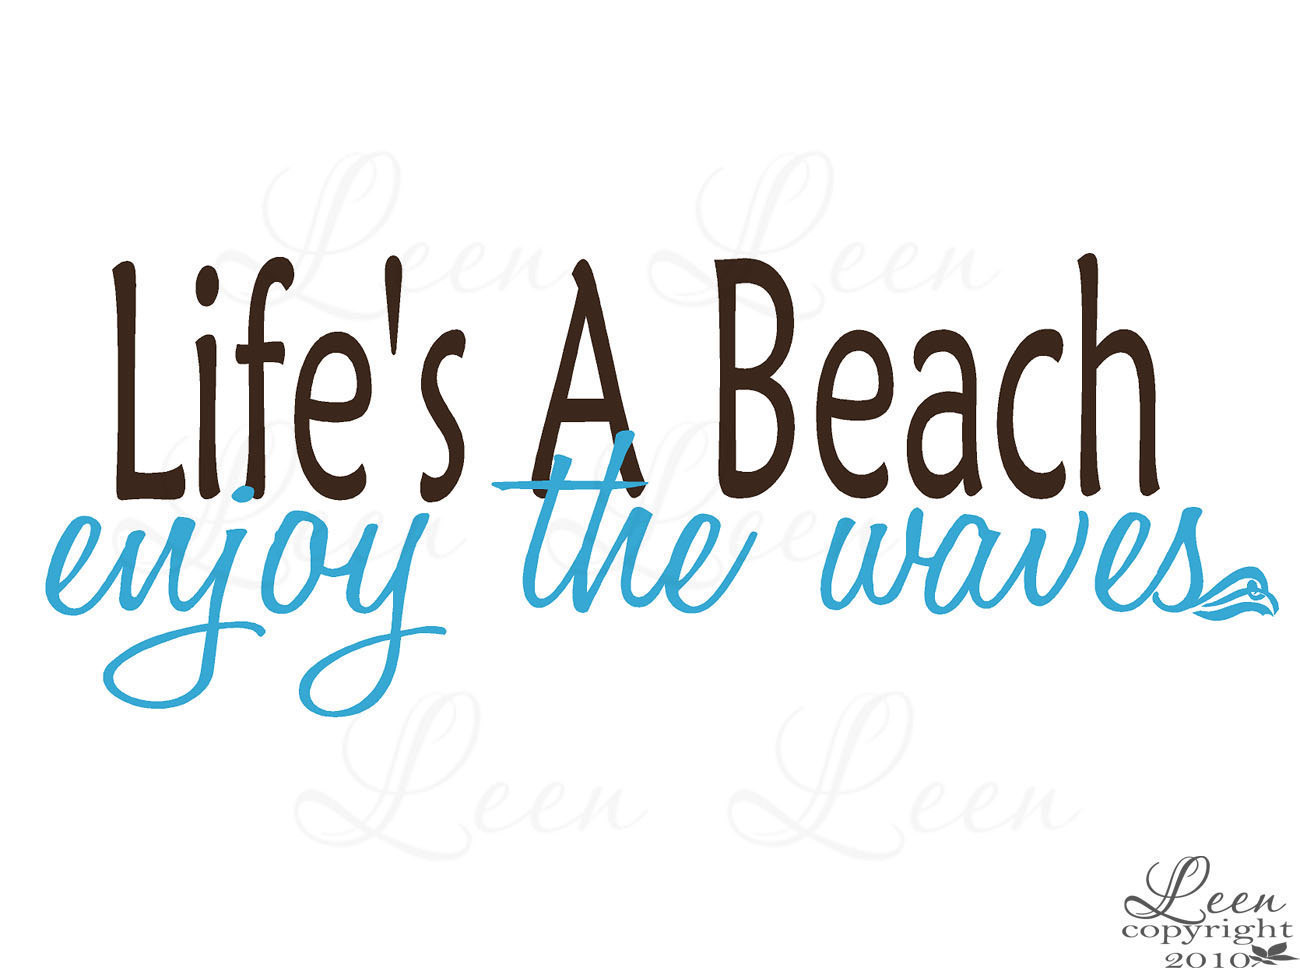 Life is beach. Life is a Beach. Enjoy Beach Life. Life is a Beach enjoy the Waves. Наклейка Life is a Beach шрифт.